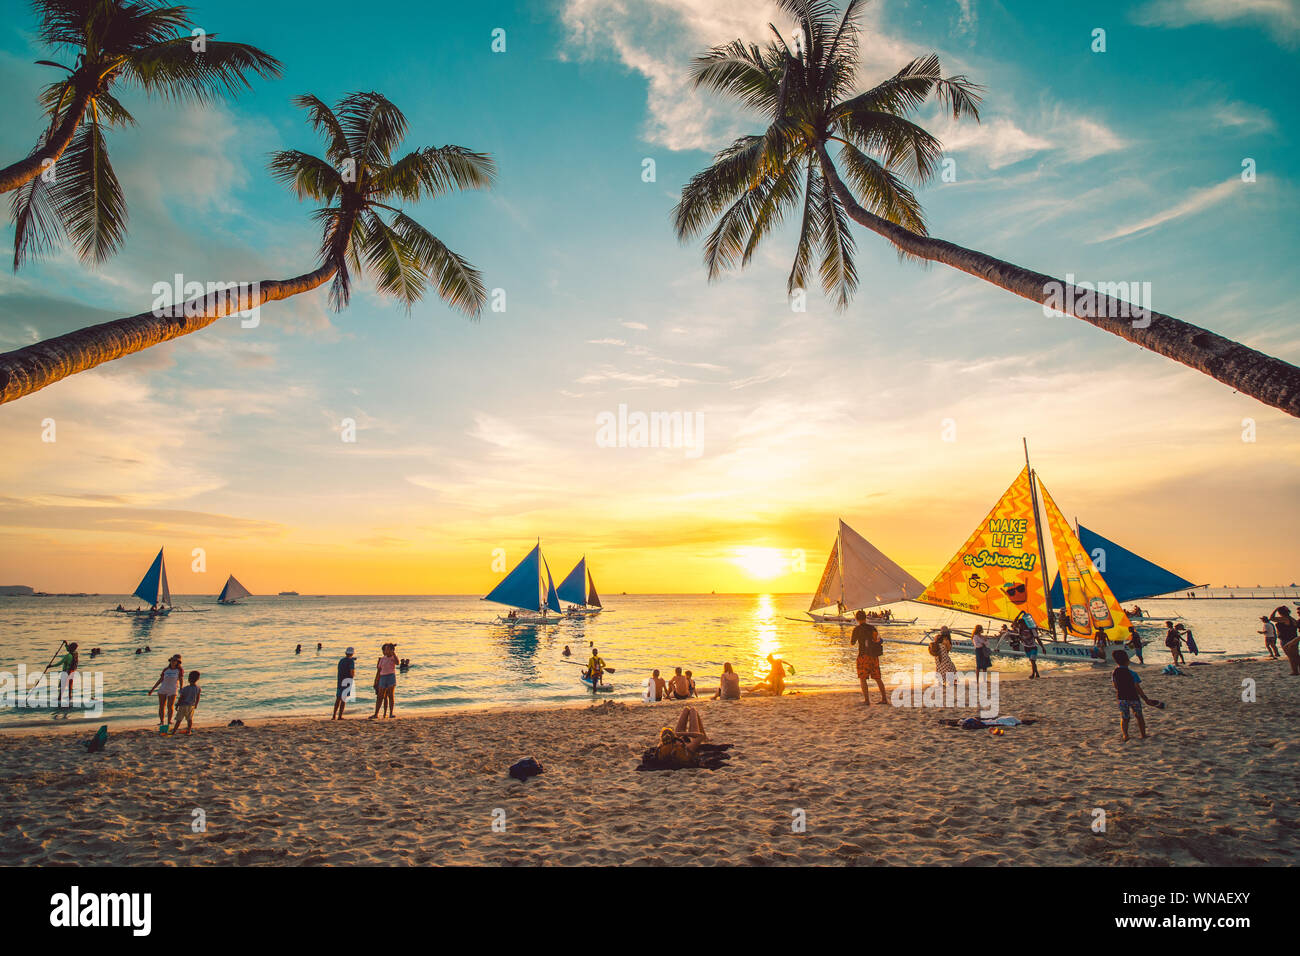 Boracay, Philippinen - 12. April 2019: Menschen genießen Sie einen spektakulären Sonnenuntergang auf der Insel Boracay auf den Philippinen. Stockfoto